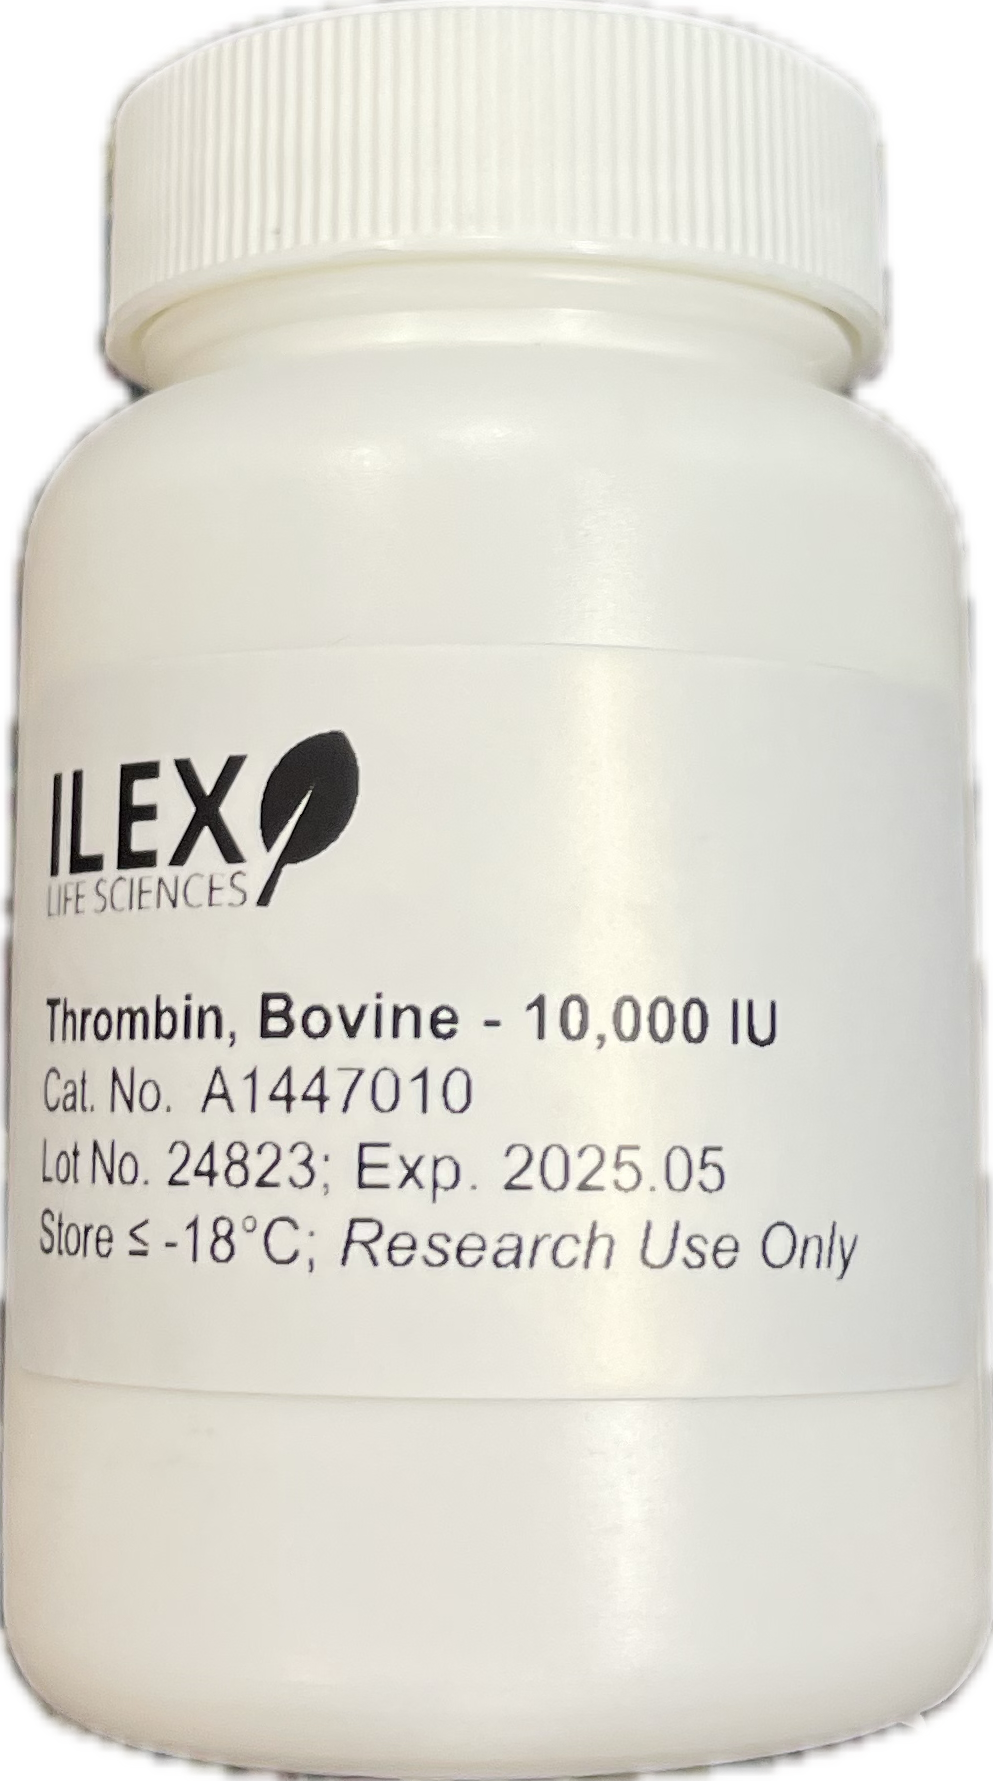 Bottle of thrombin, bovine protein